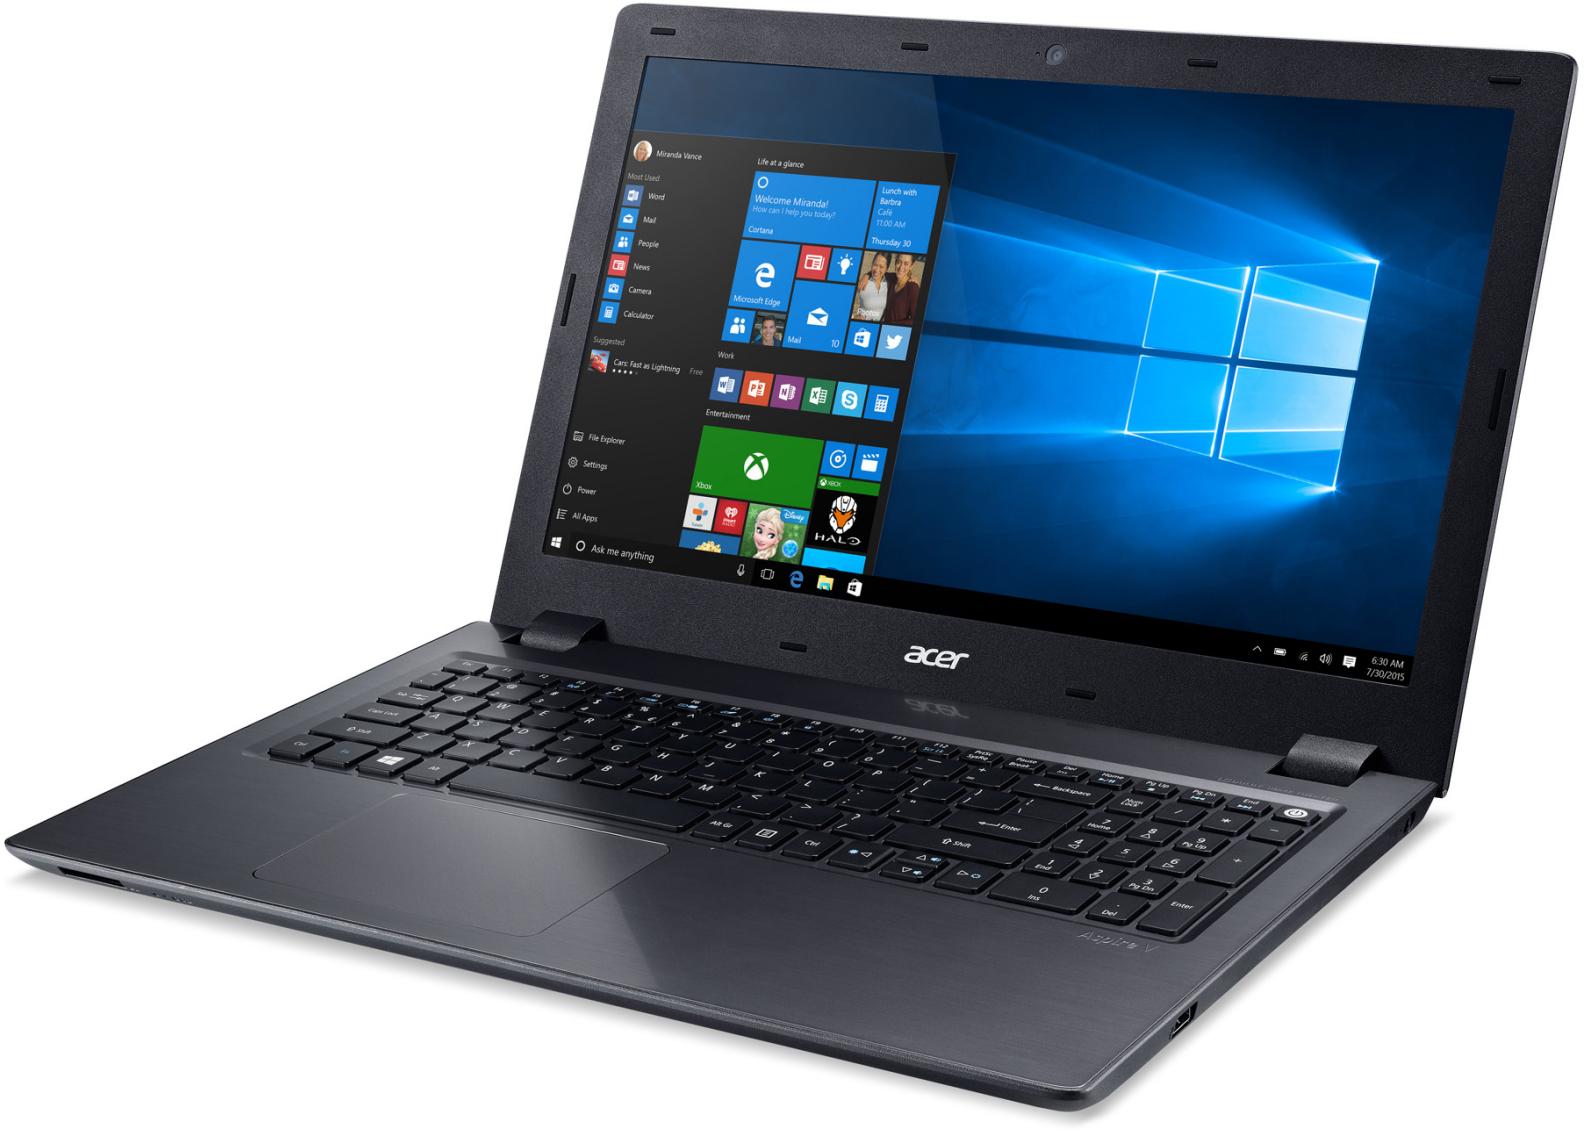   Acer Aspire V5-591G-59Y9 (NX.G66ER.007)  1